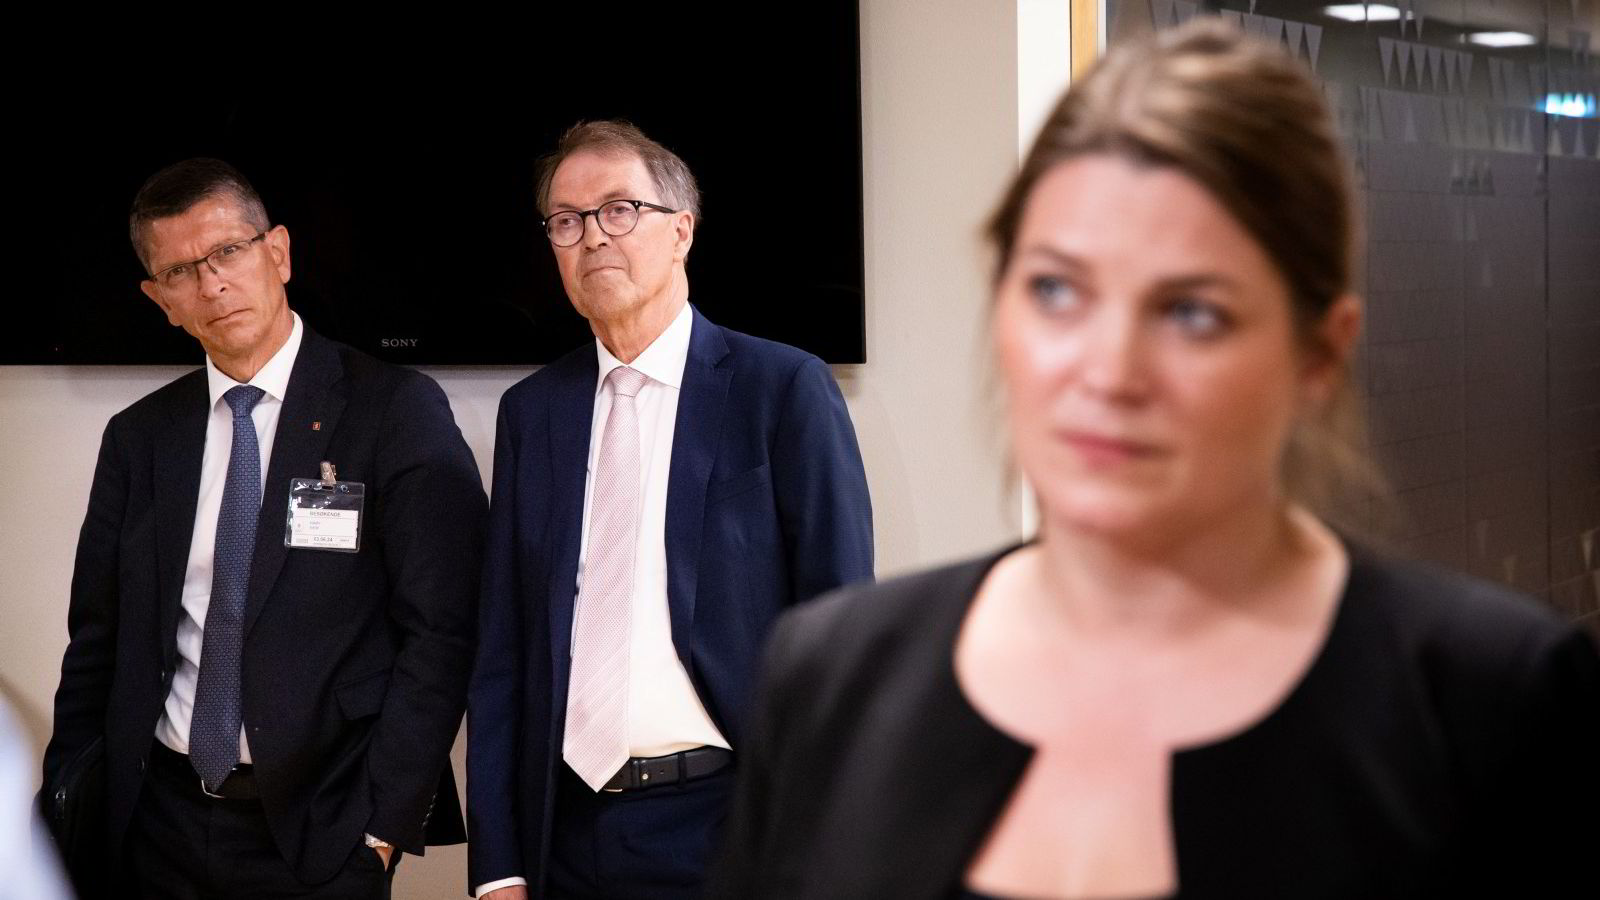 Ingen bonusenighet mellom Kongsberg-styreleder og næringsministeren